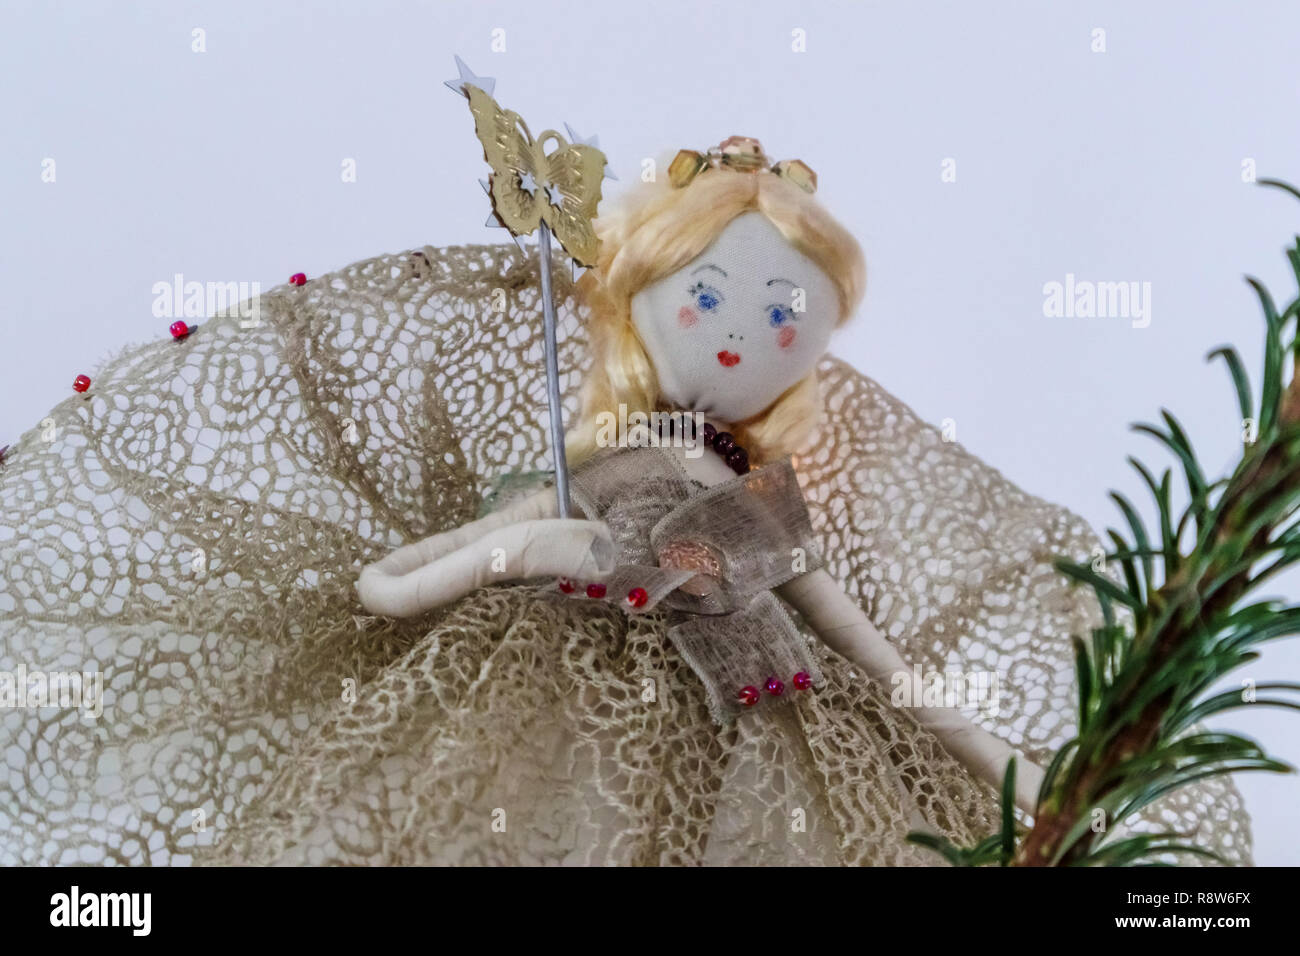 Klassische Tobias und der Engel traditionelle weihnachtliche Märchen, Haus  aus alten Stoffen und Materialien, schmücken einen Weihnachtsbaum  Stockfotografie - Alamy